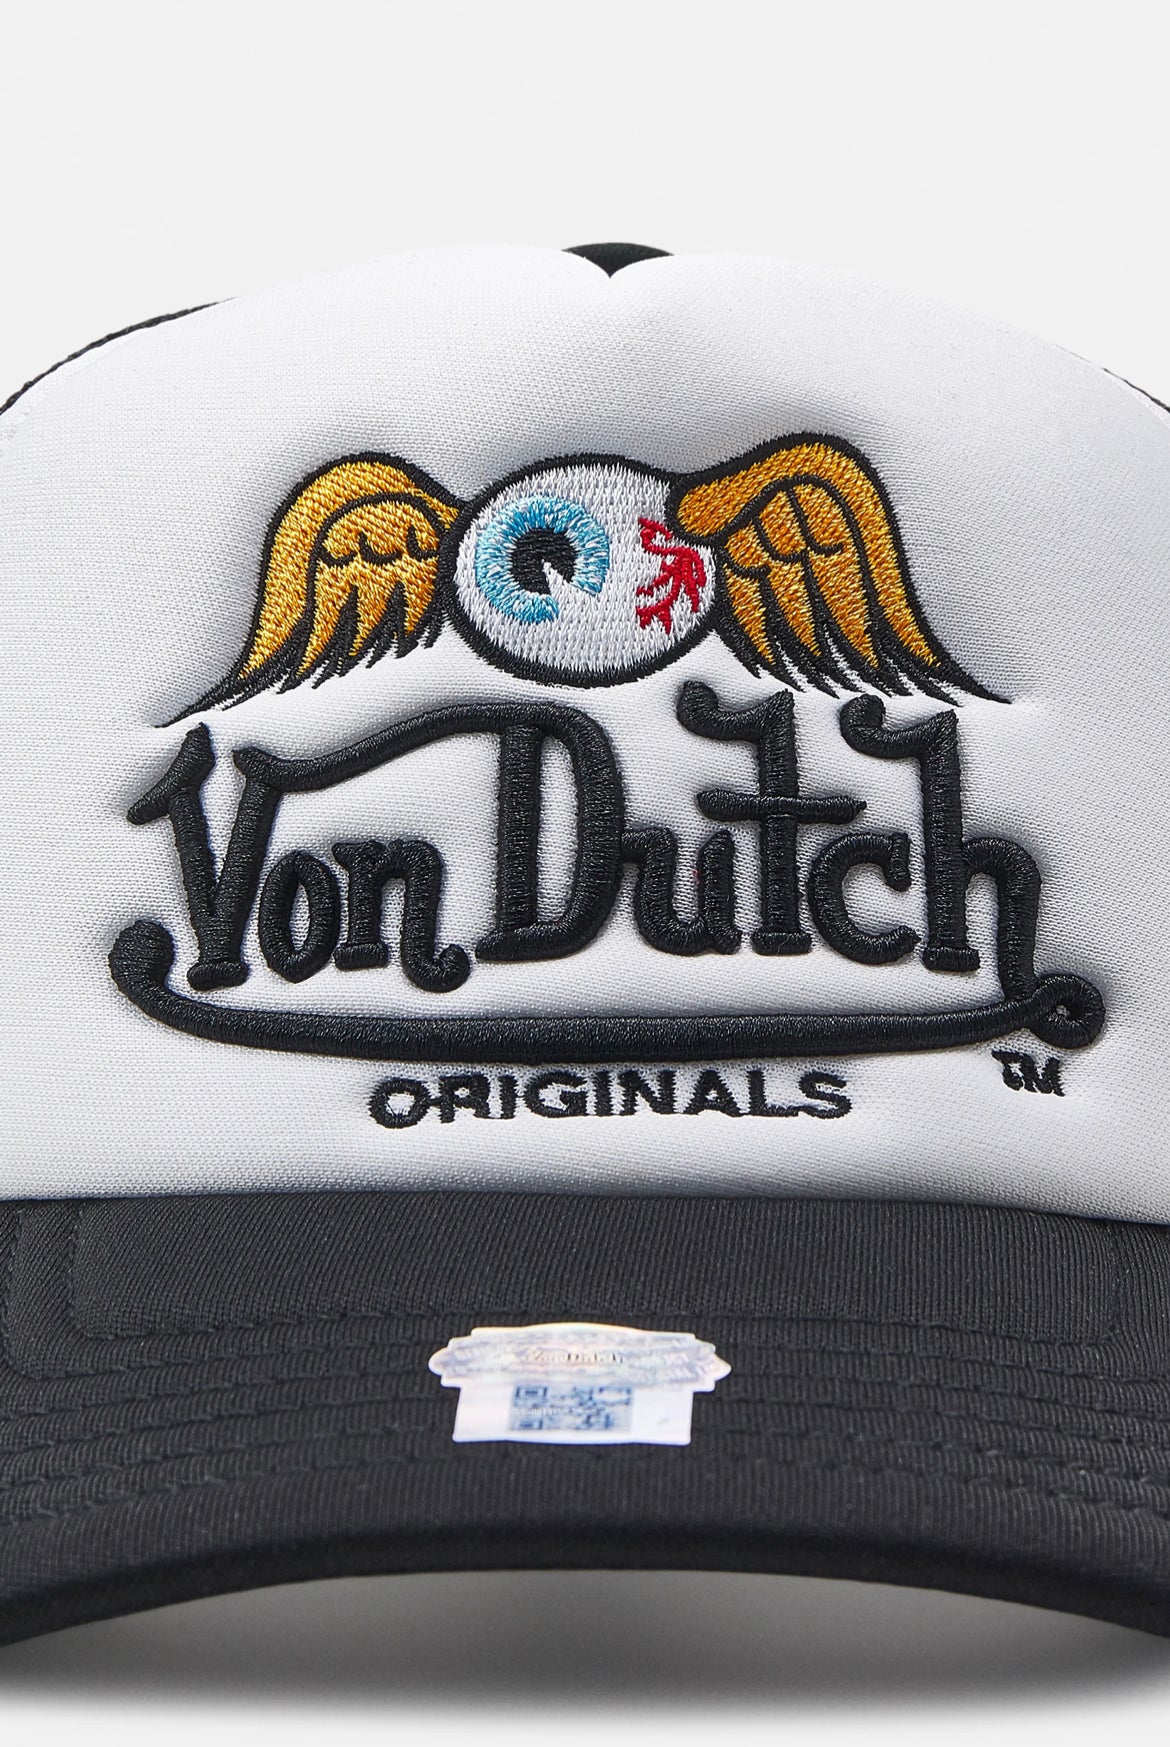 Von Dutch trucker baker cap